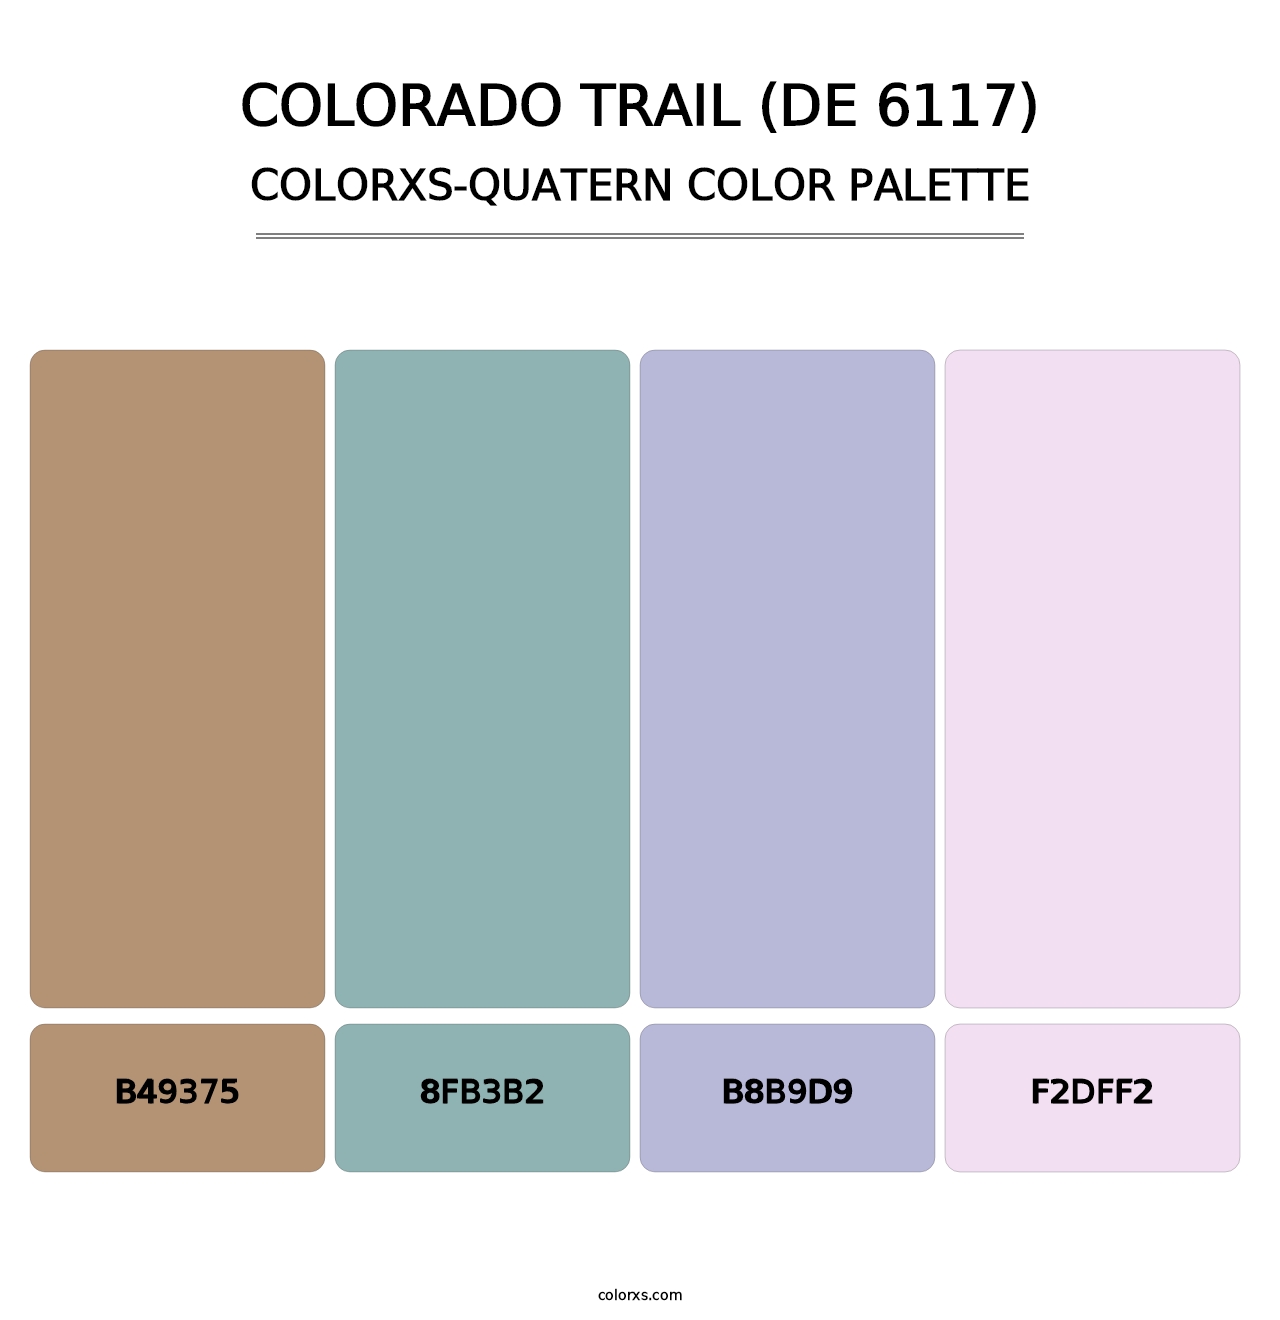 Colorado Trail (DE 6117) - Colorxs Quatern Palette